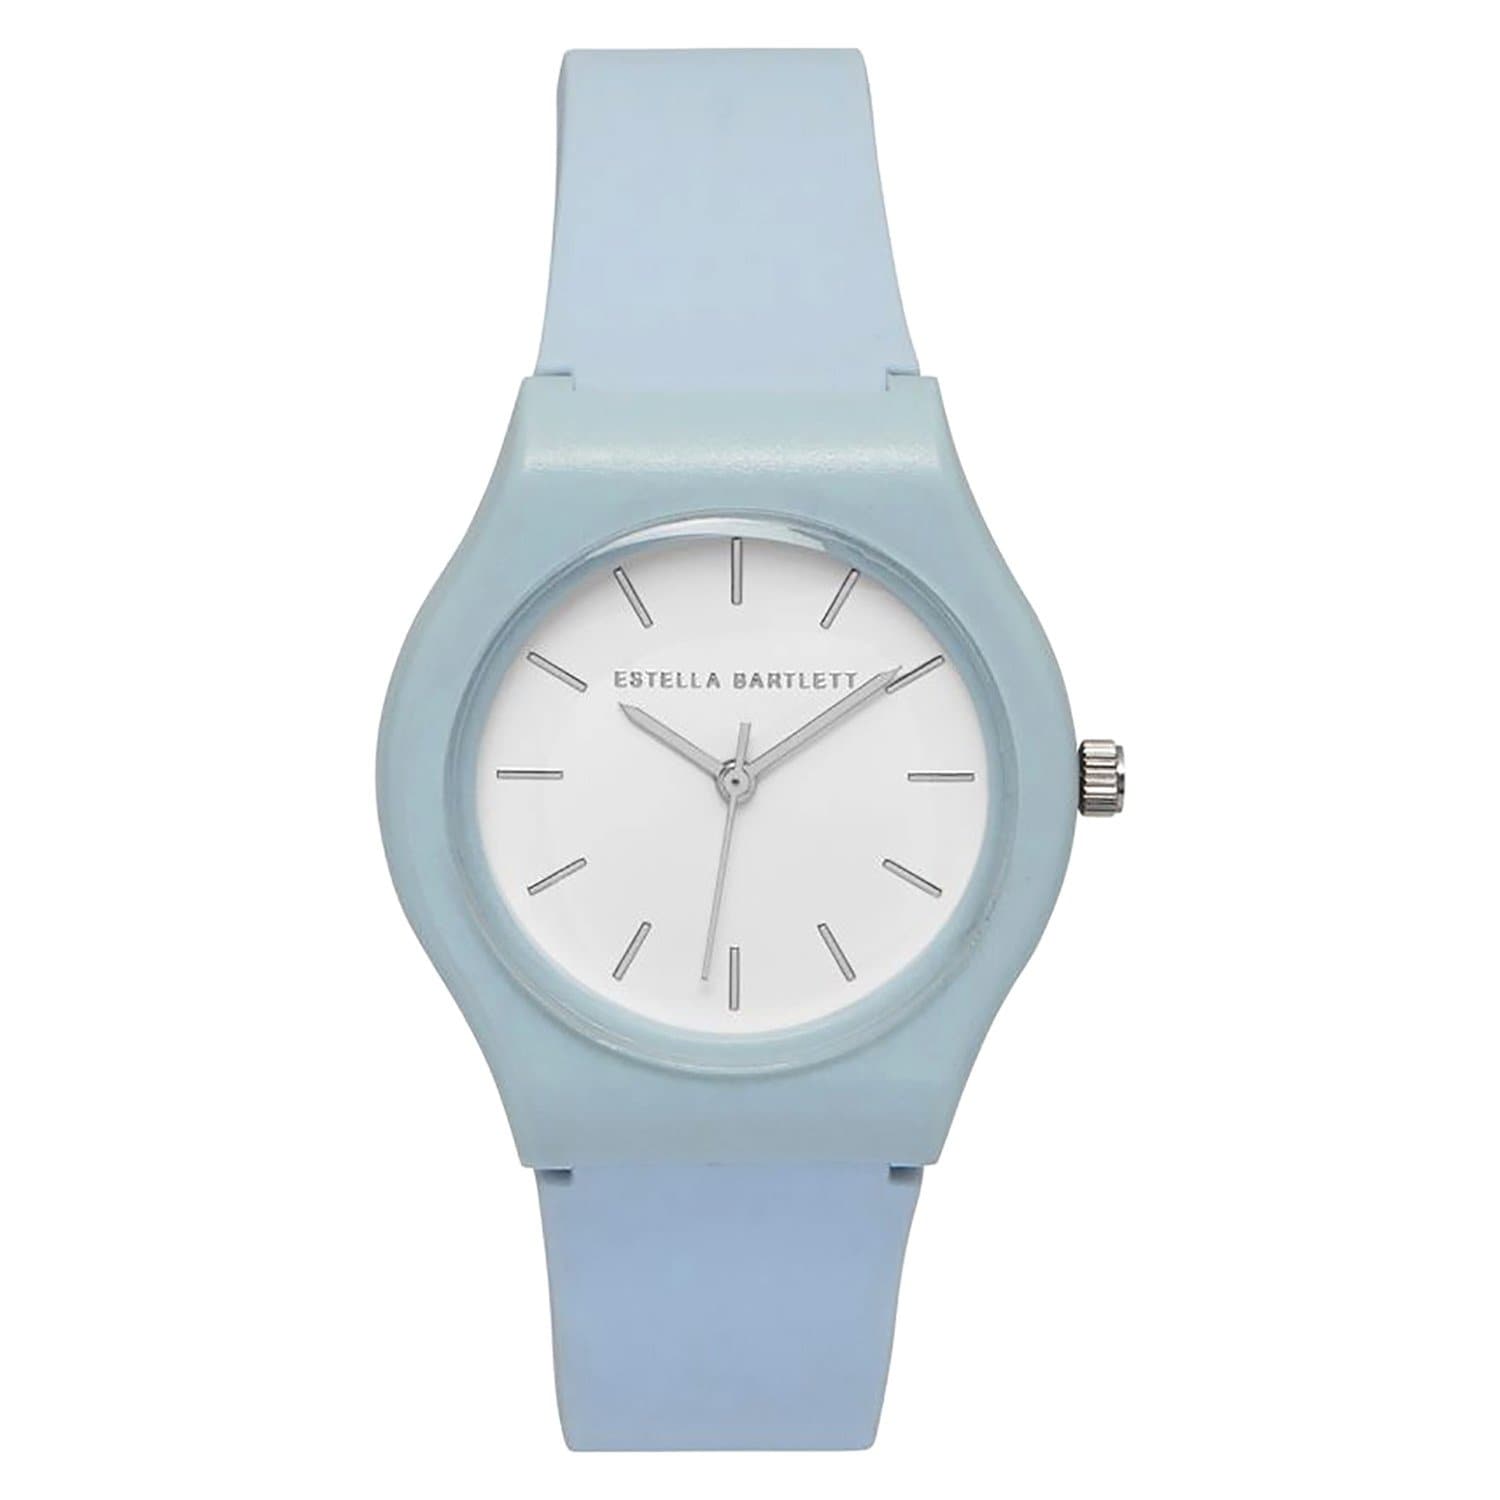 Estella Bartlett Silicone Strap Watch - Blue and Silver - EBW3375